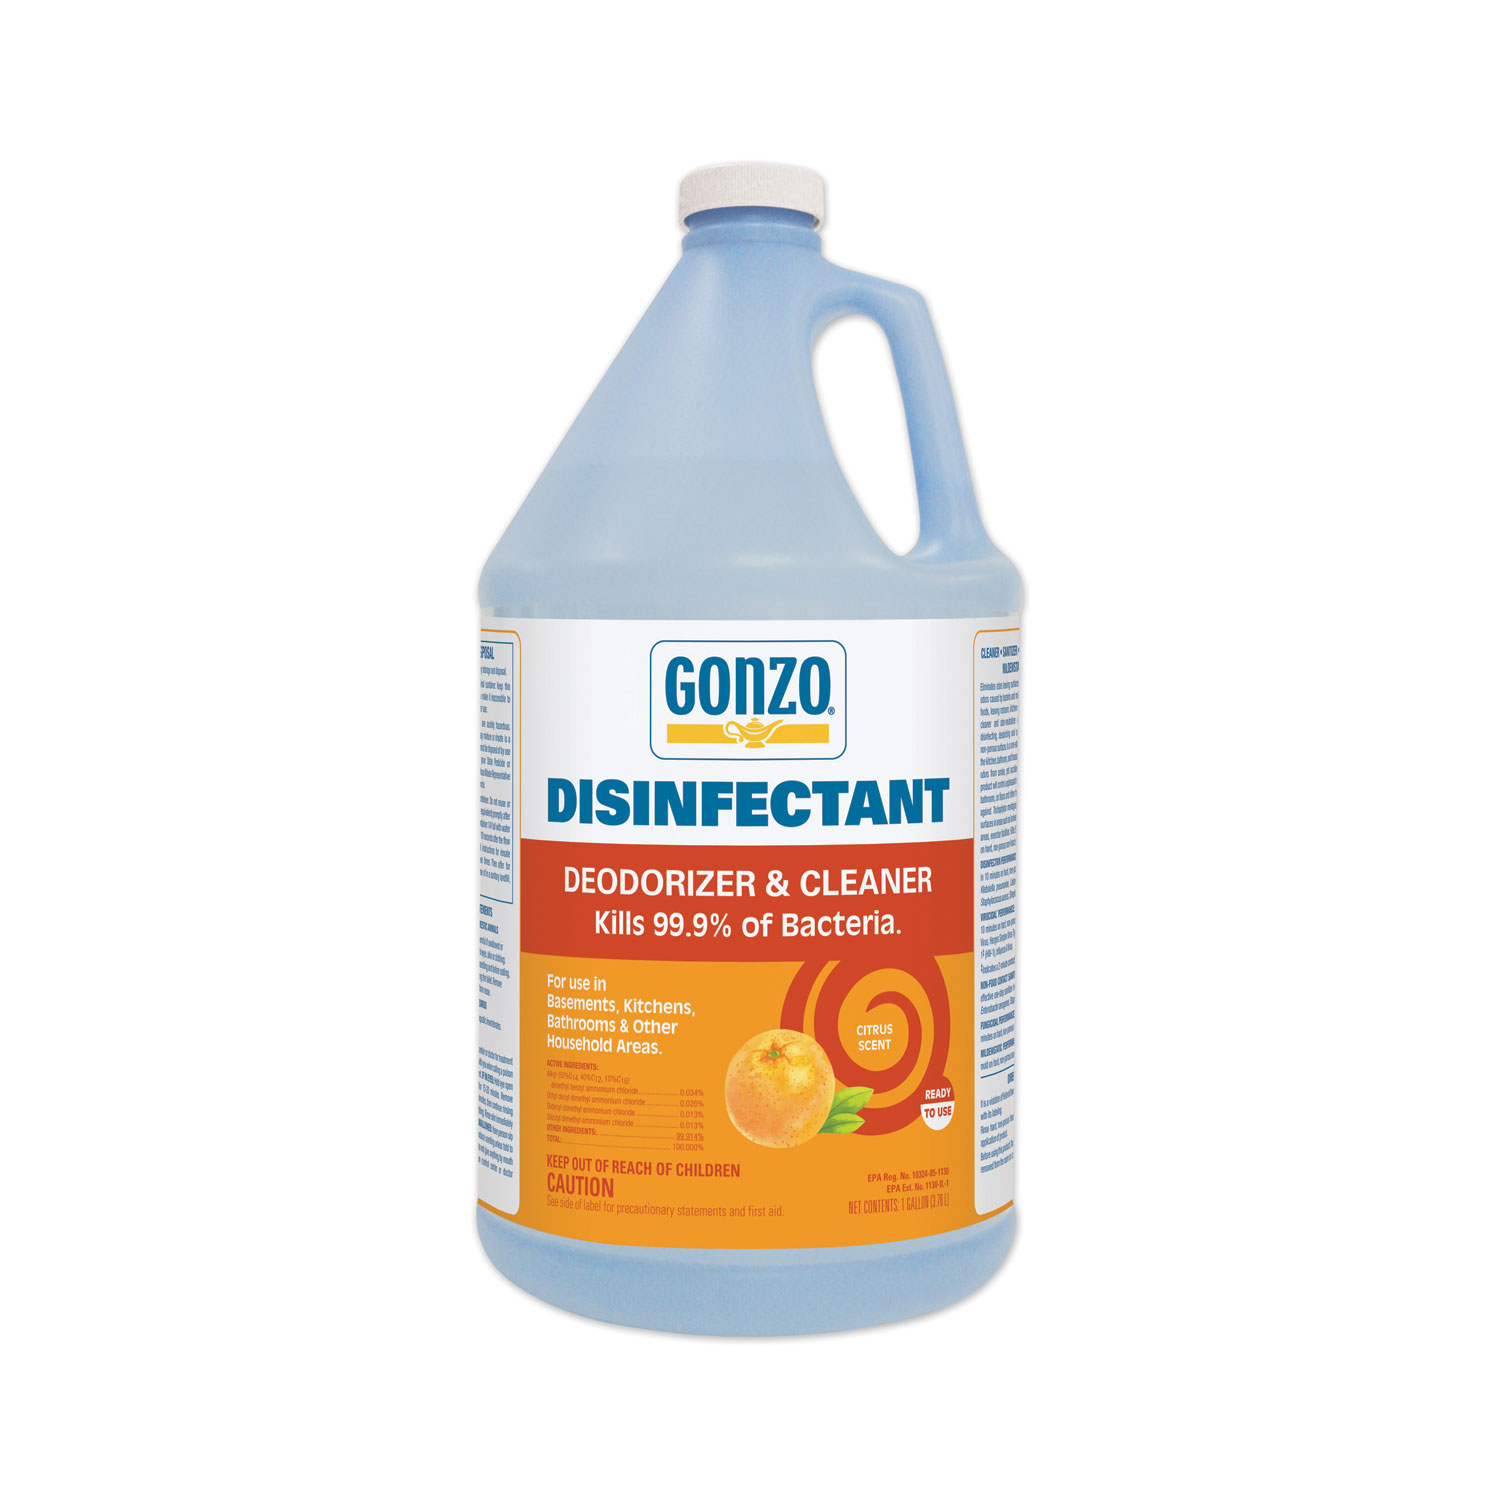 Goo Gone 2112CT Pro-Power Cleaner, Citrus Scent, 1 qt Bottle, 6